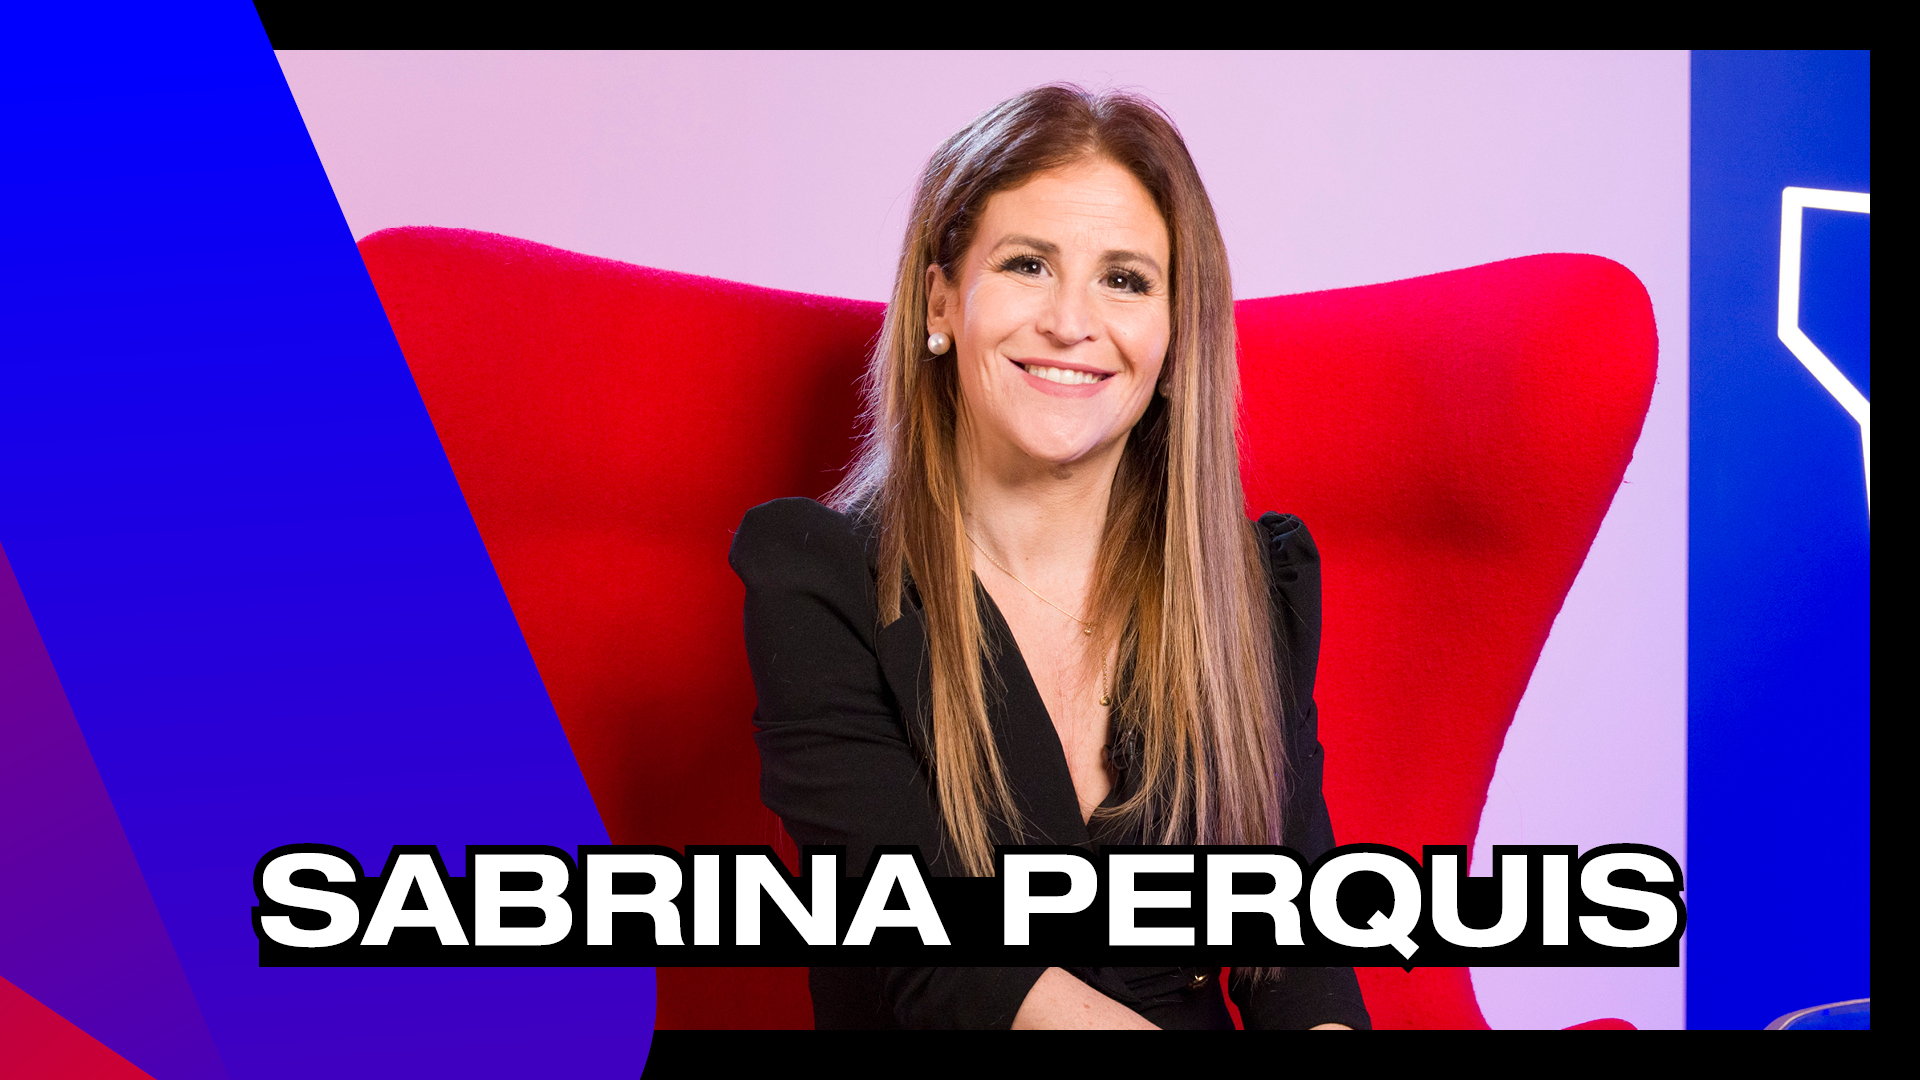 Sabrina Perquis